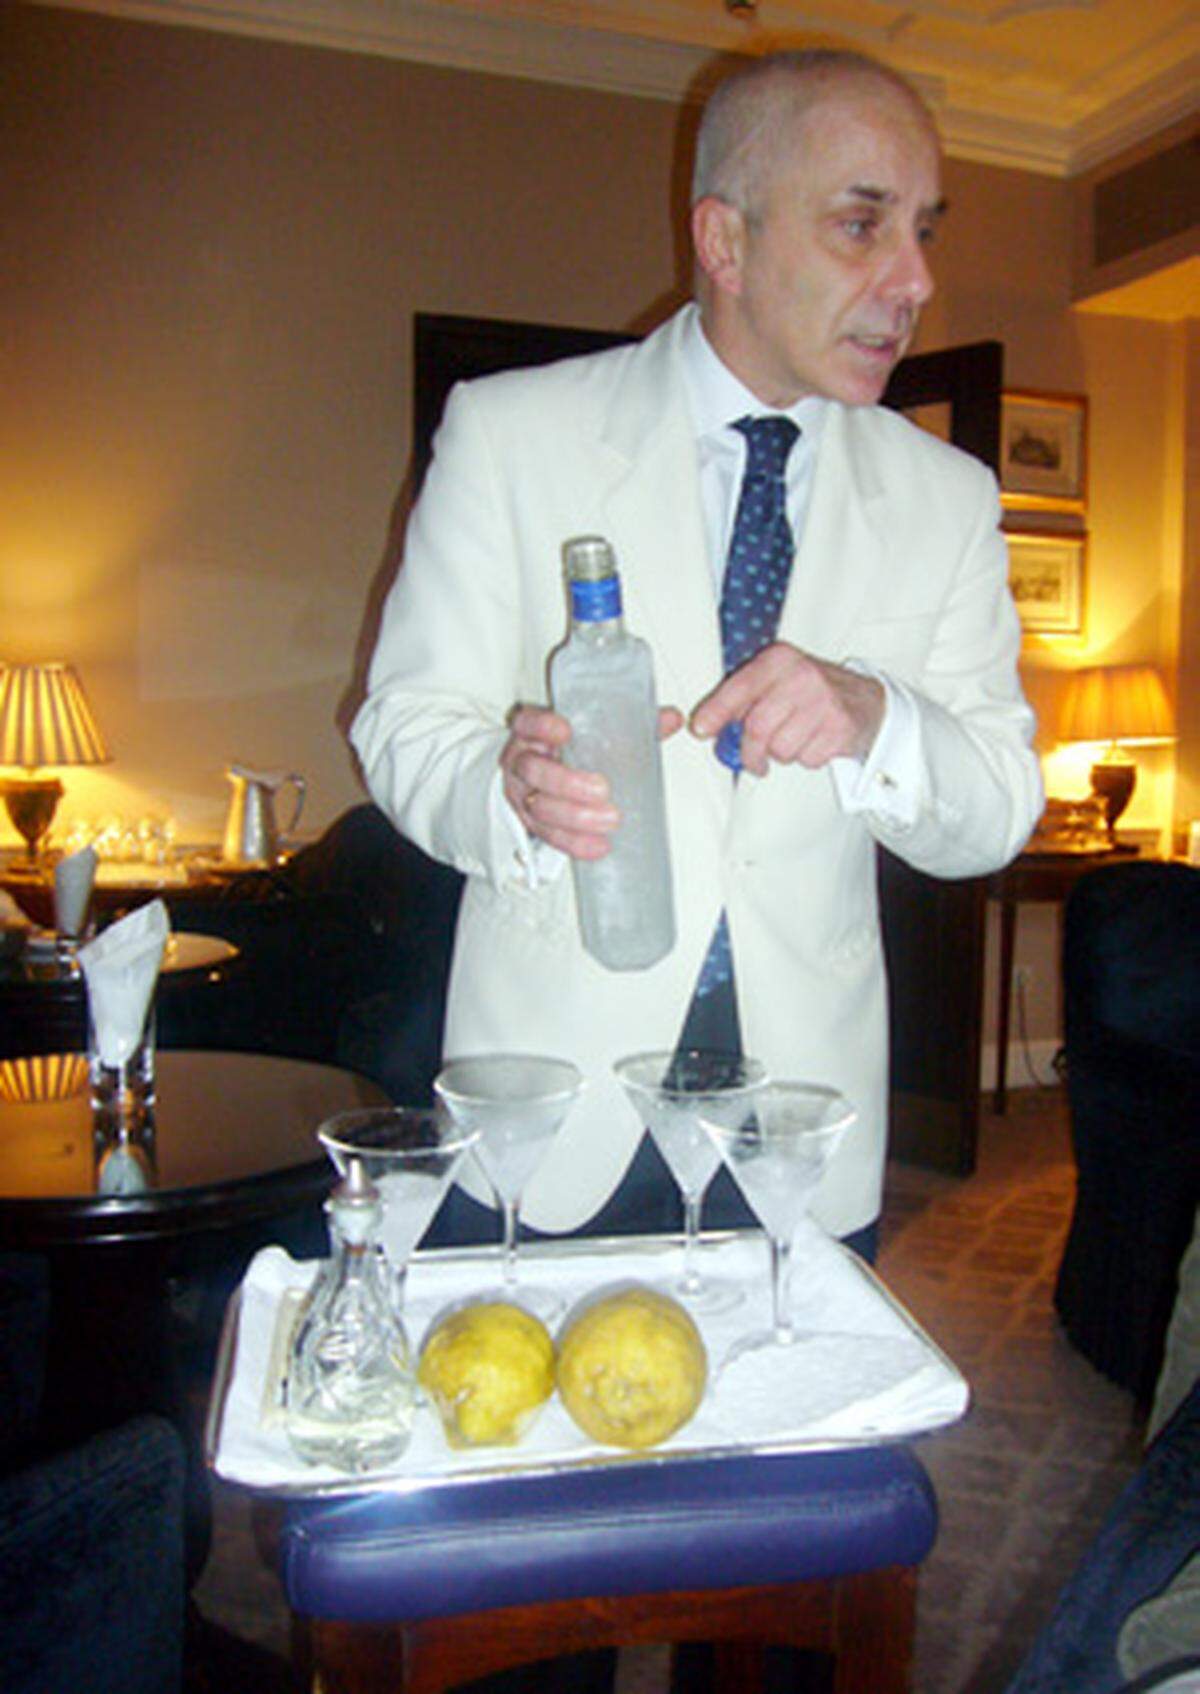 Bei Schritt vier teilen sich die Meinungen: Alessandro nimmt für seinen Original-Martini nur London Dry Gin. Rein theoretisch könnt er auch aus Wodka gemixt werden. "Rein theoretisch", sagt Palazzi.